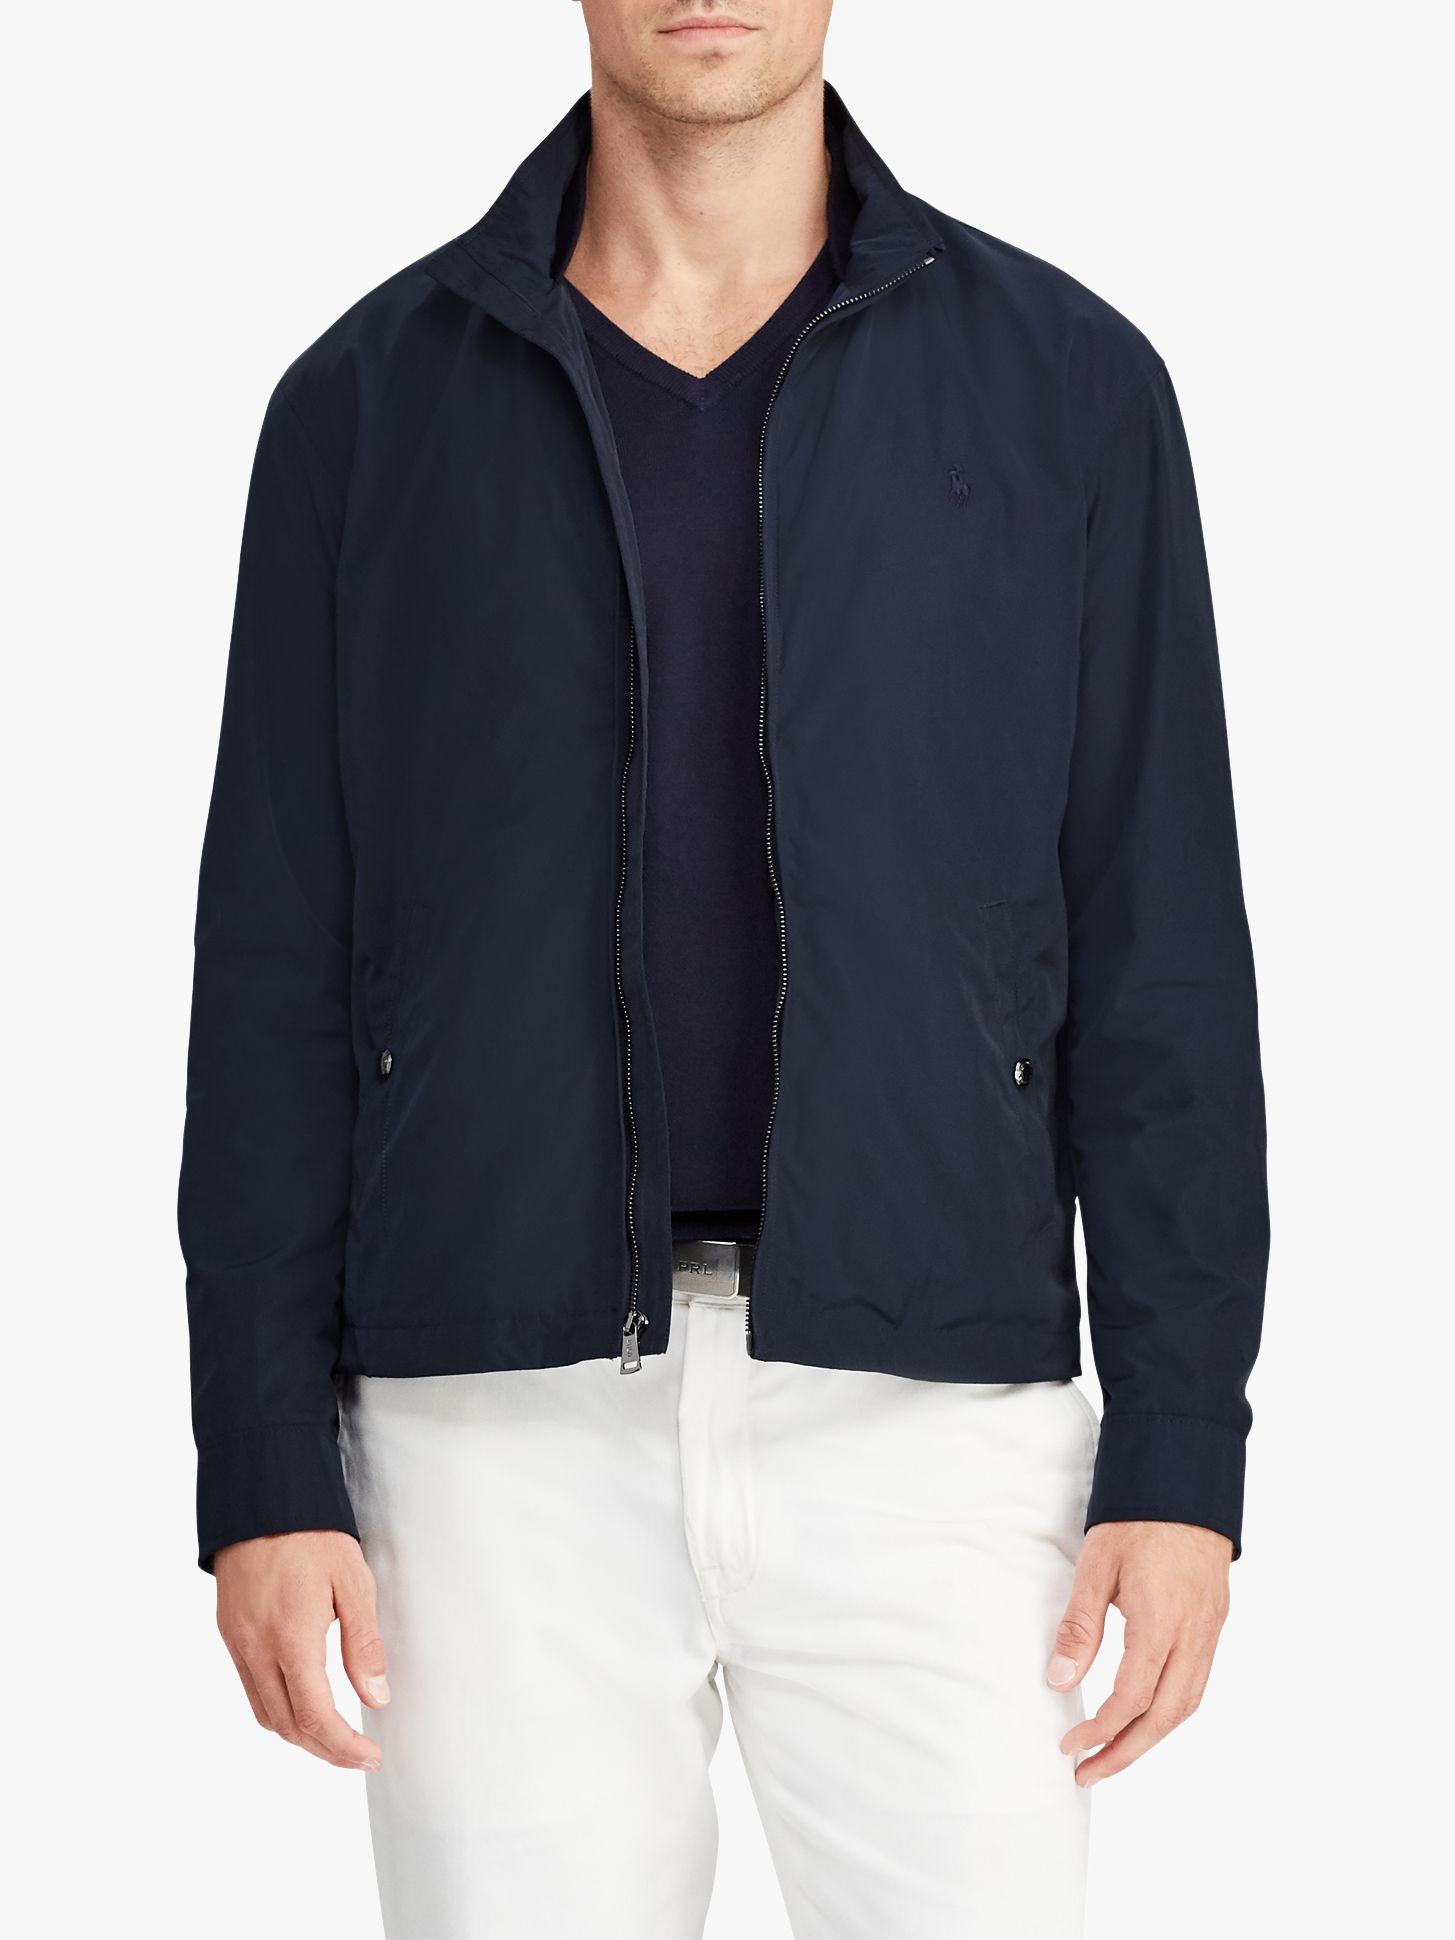 polo aviator navy jacket